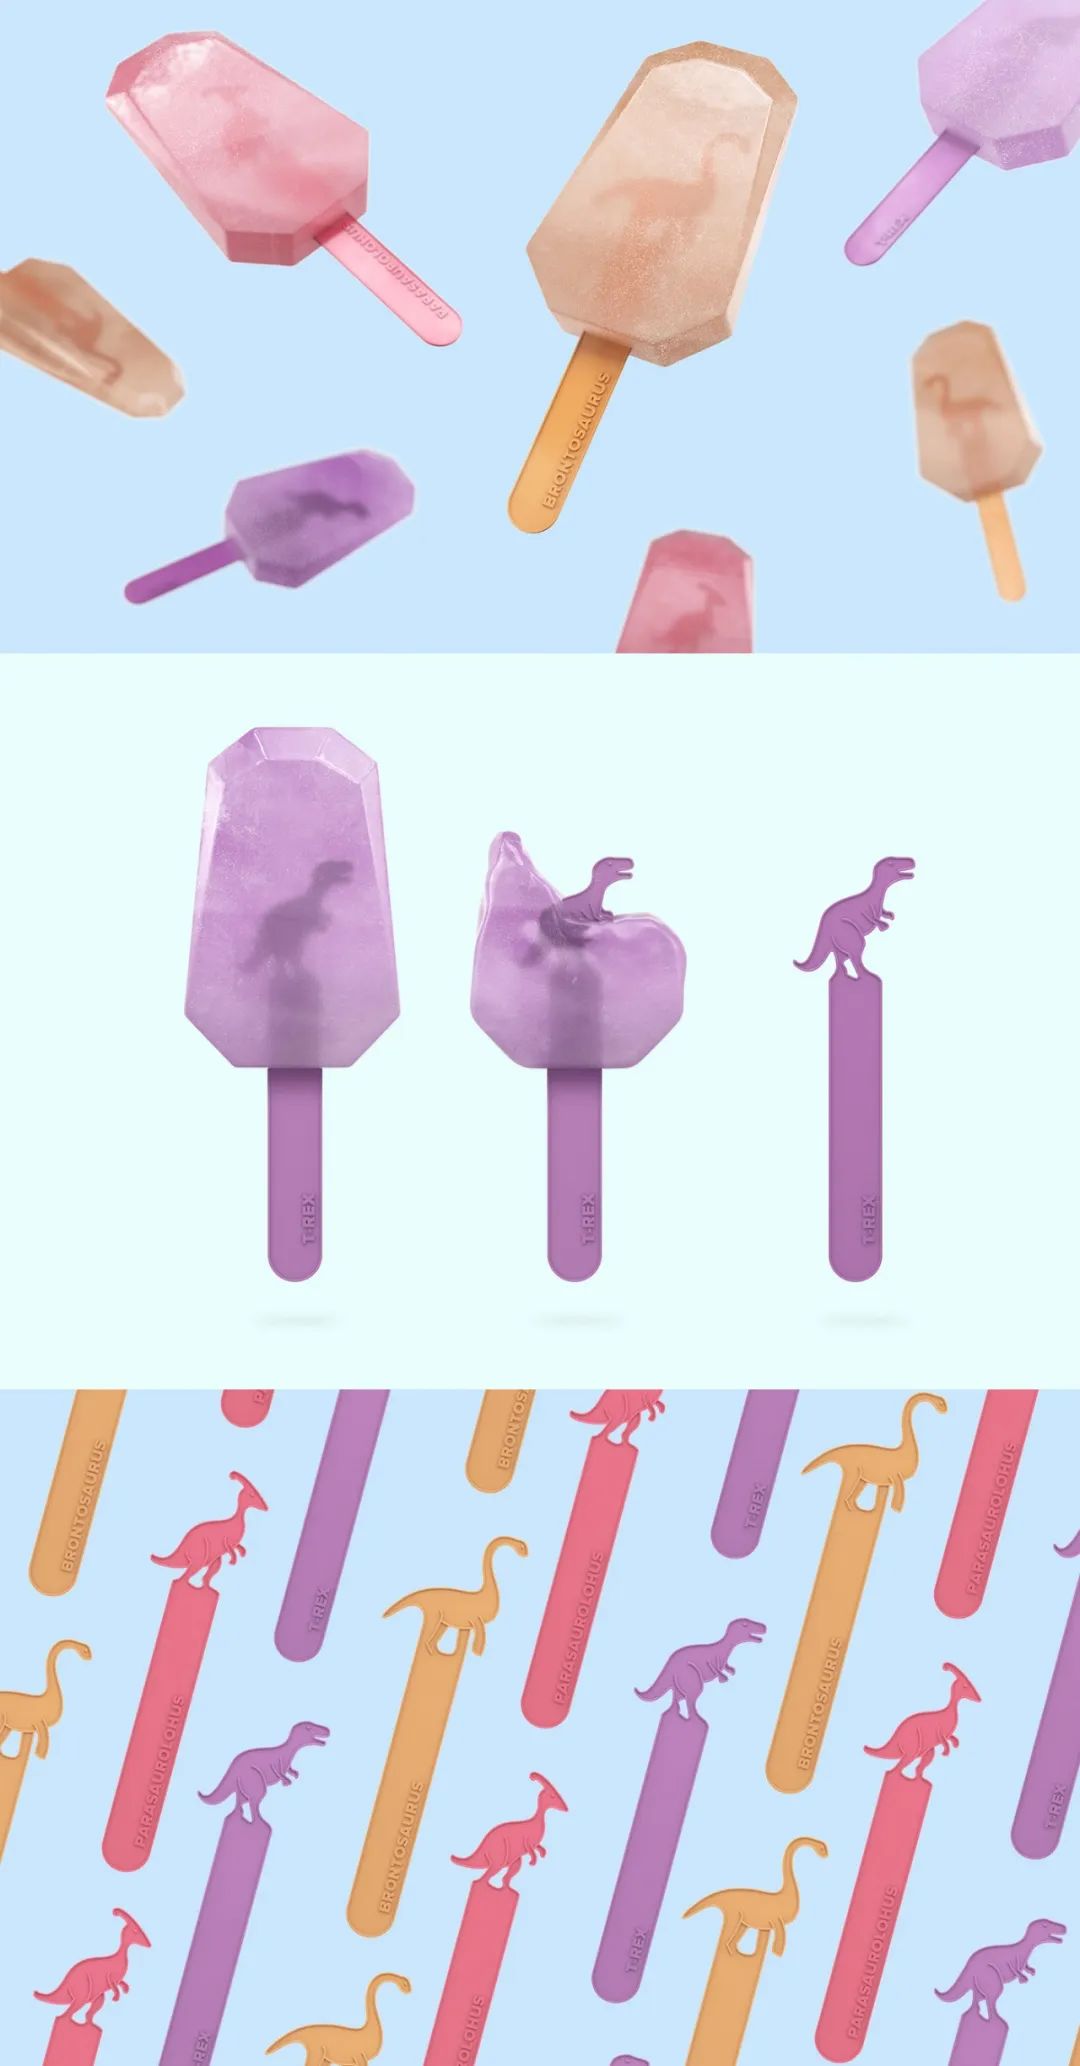 夏日的清凉美味！5款冰淇淋创意包装设计